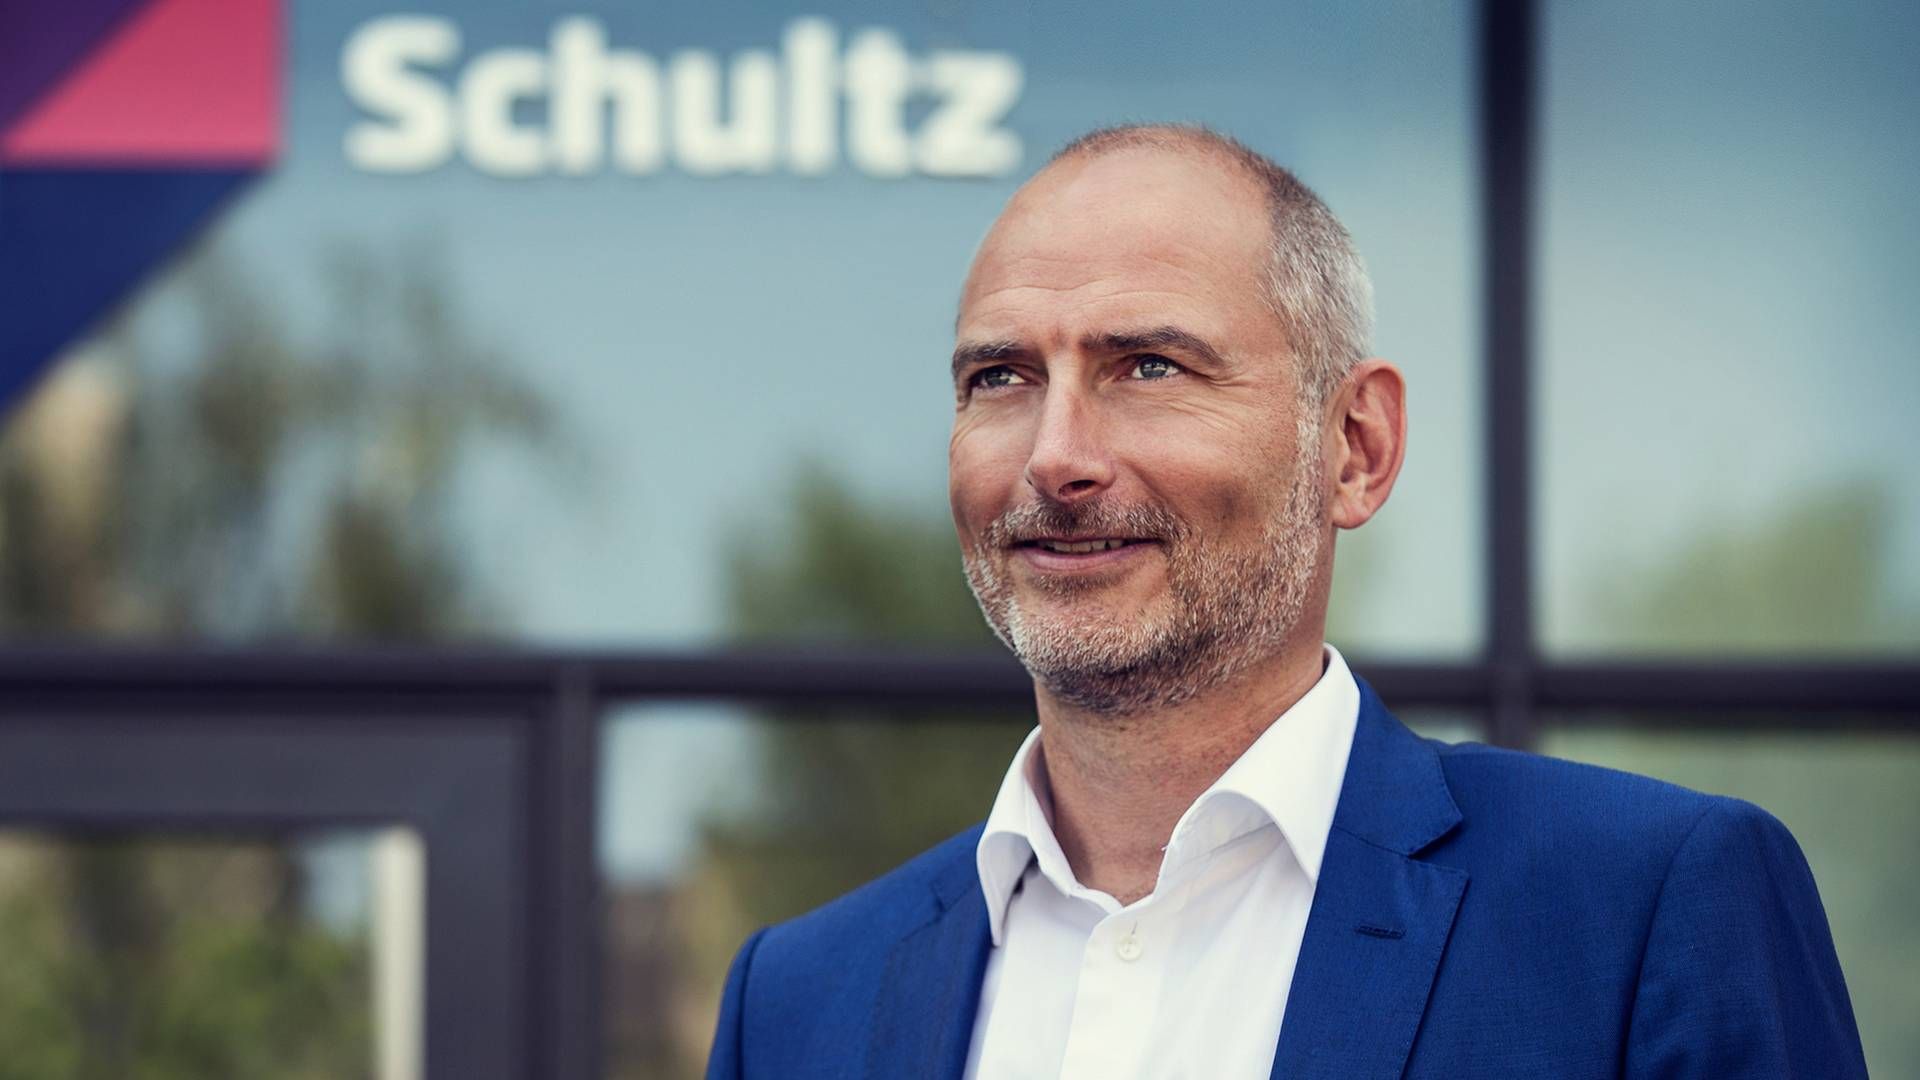 Adm. direktør i Schultz, Simon Svarrer. | Foto: Schultz